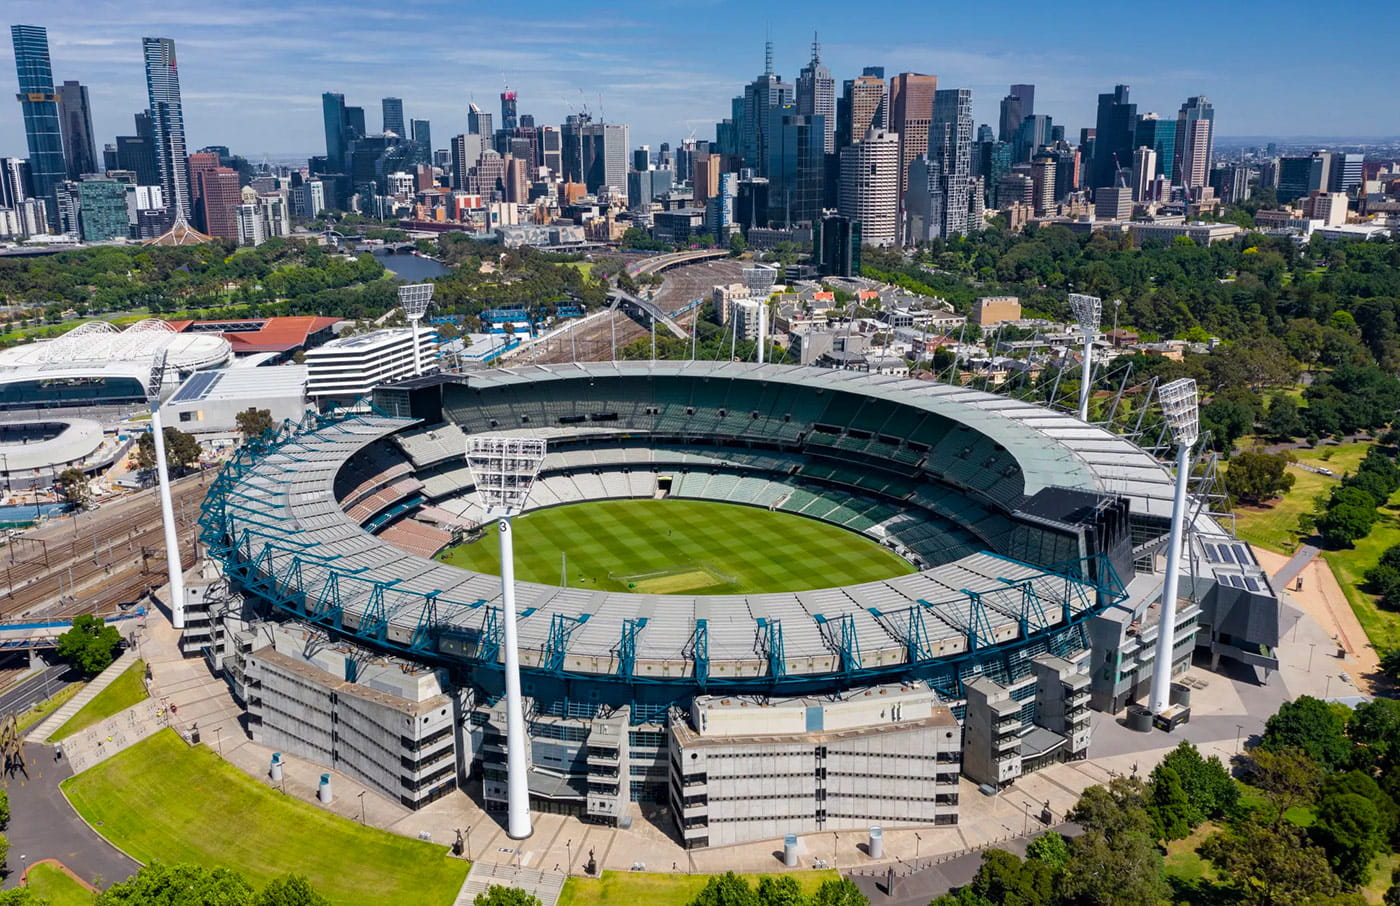 Hình ảnh sân nhà của đội tuyển quốc gia Australia Melbourne Cricket Ground